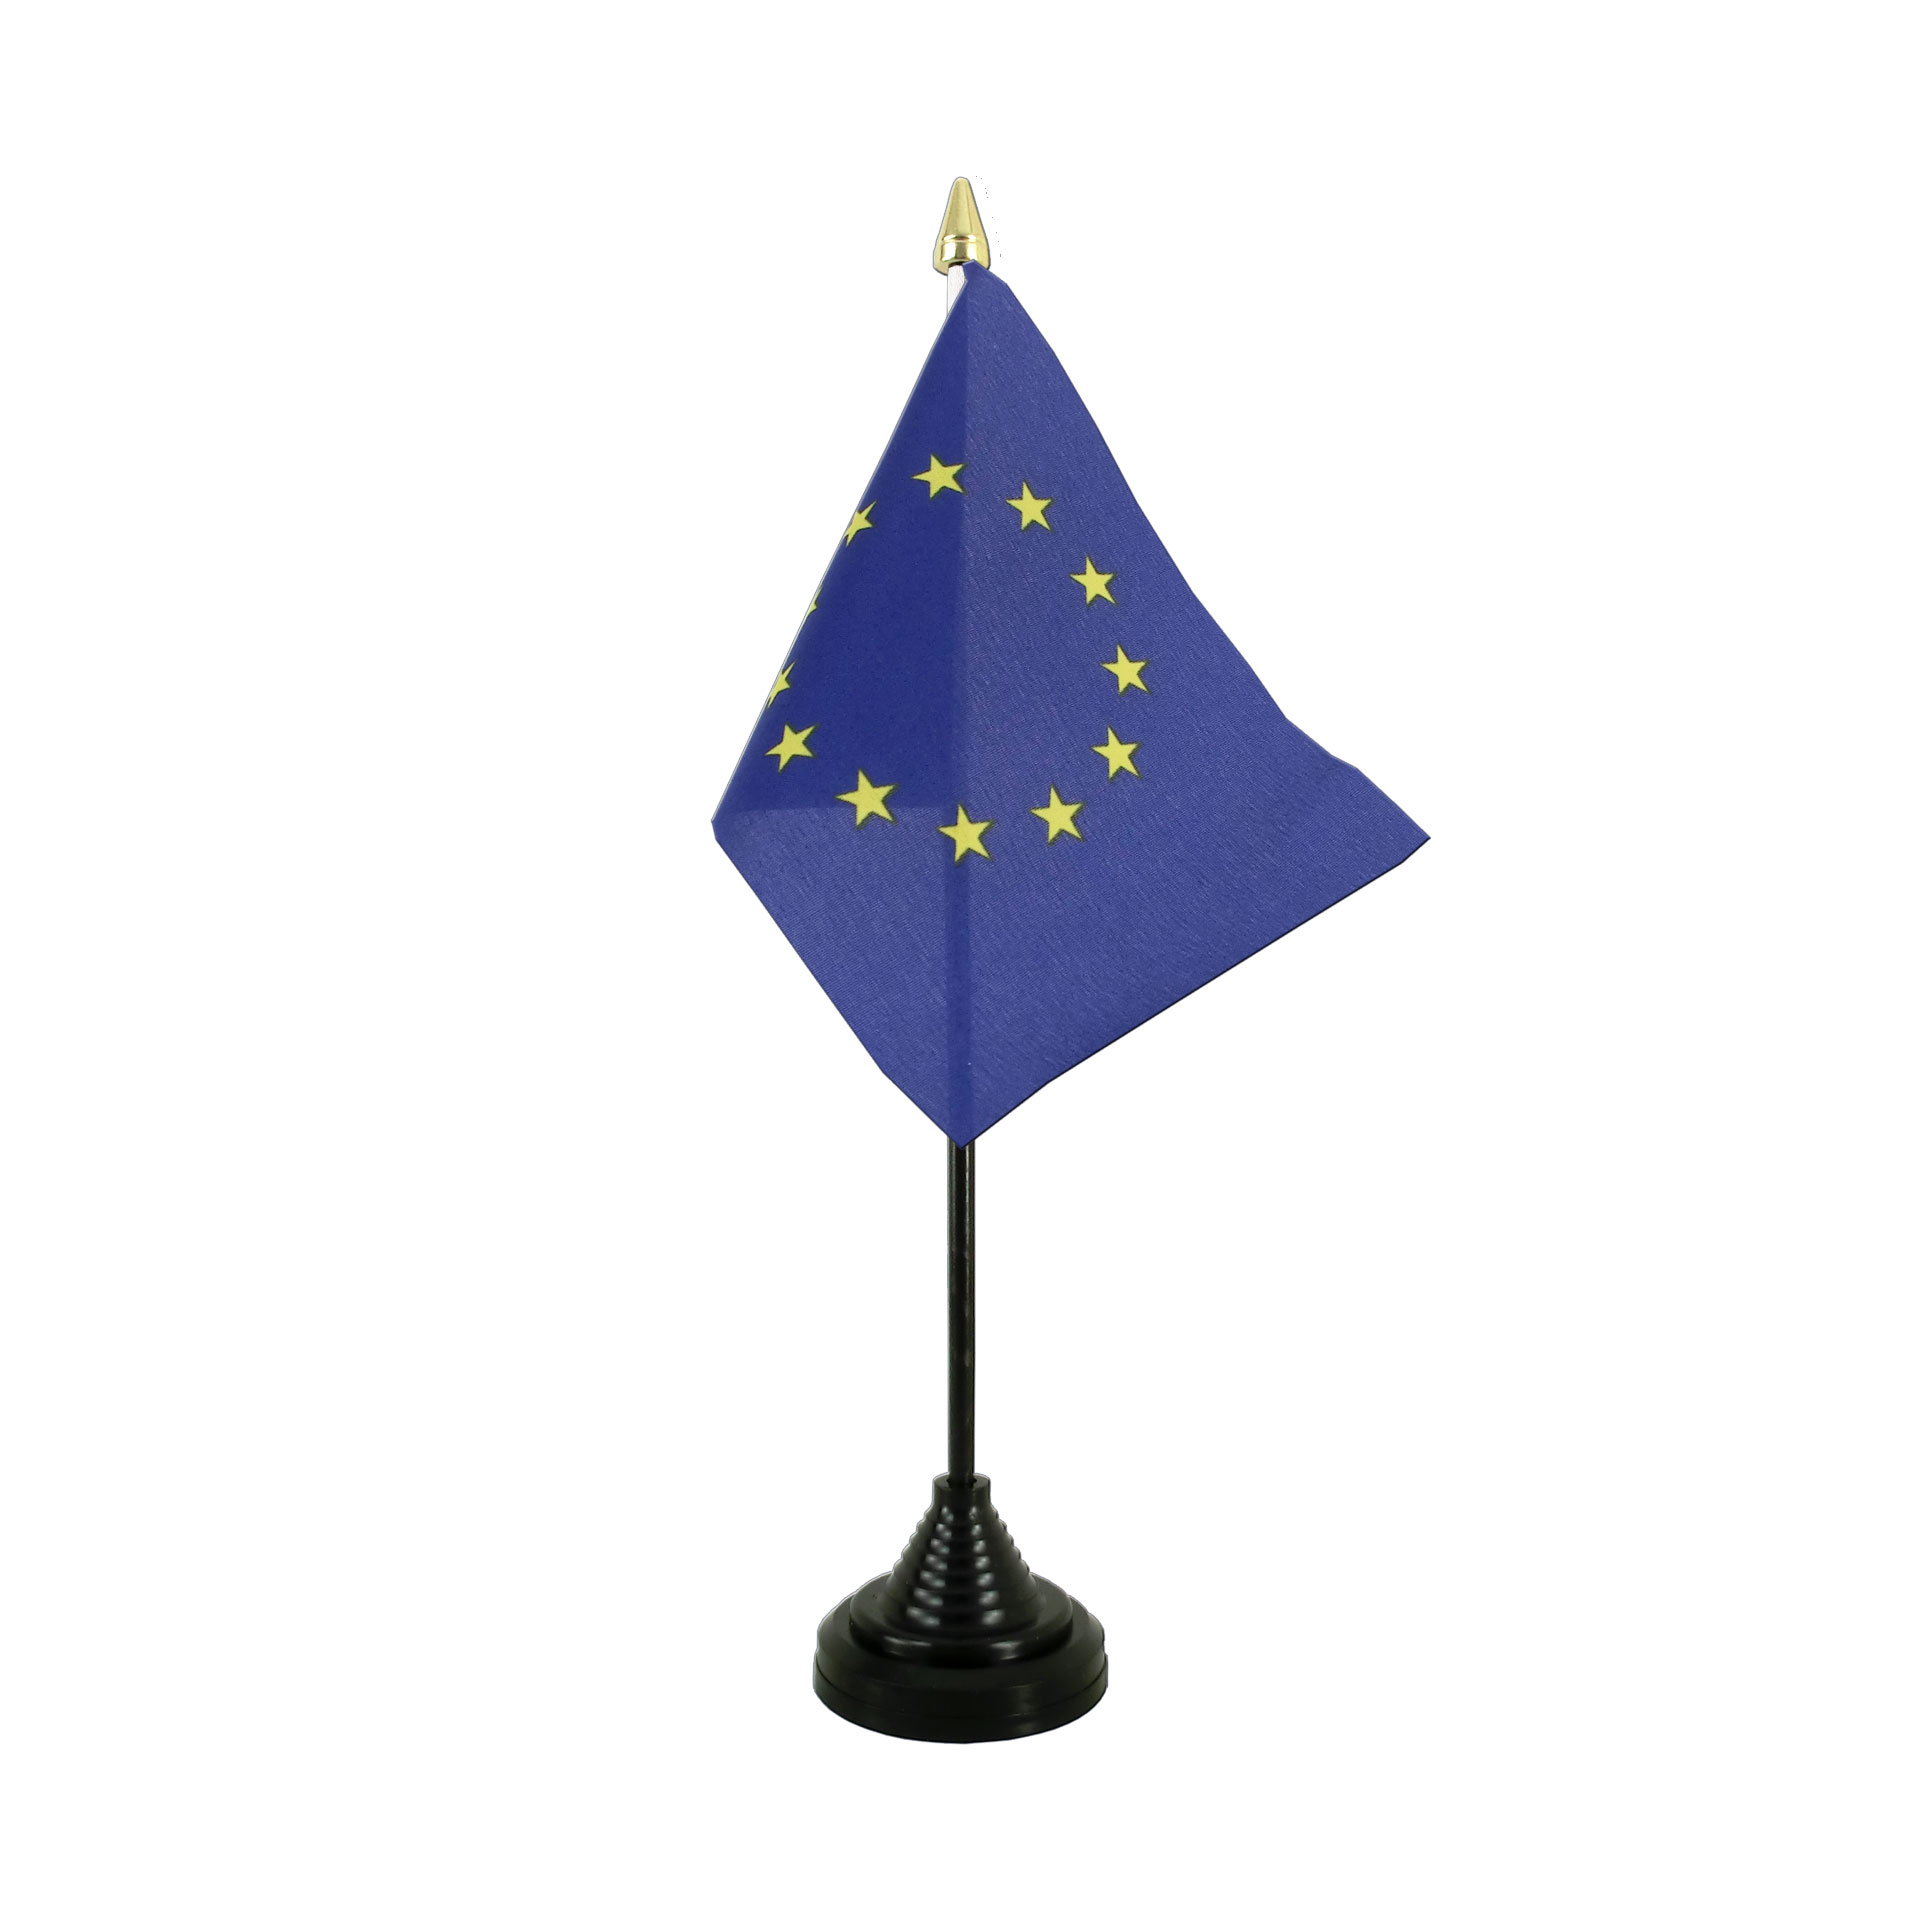 15 x 22 cm Flaggenfritze® Tischflagge Europäische Union EU mit 27 Sternen 